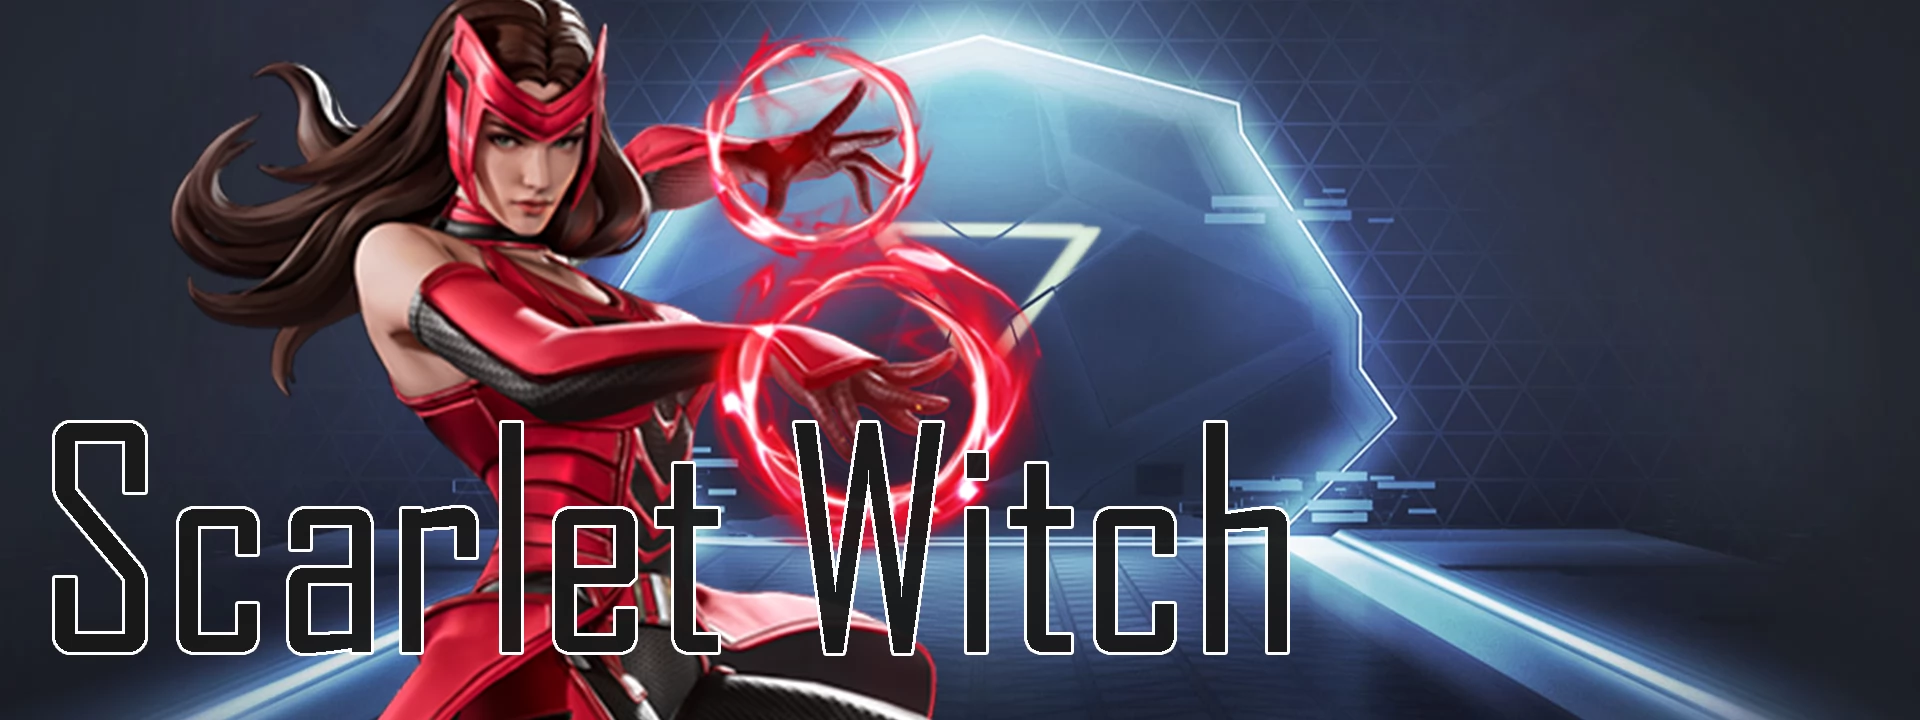 Scarlet Witch (Marvel Super Wars)